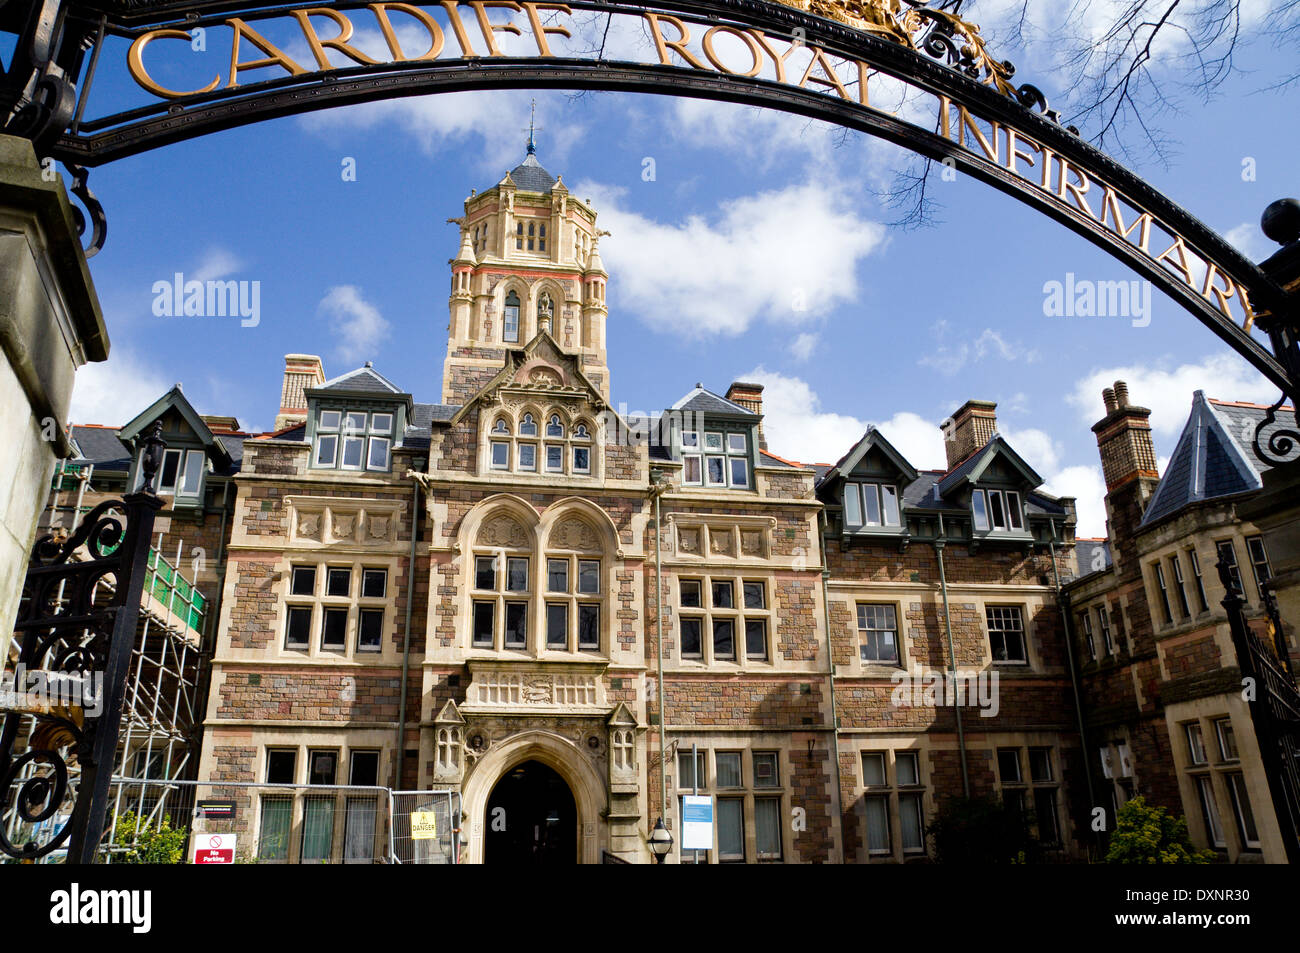 Cardiff Royal Infirmary y puertas de hierro forjado, Cardiff, Gales. Foto de stock